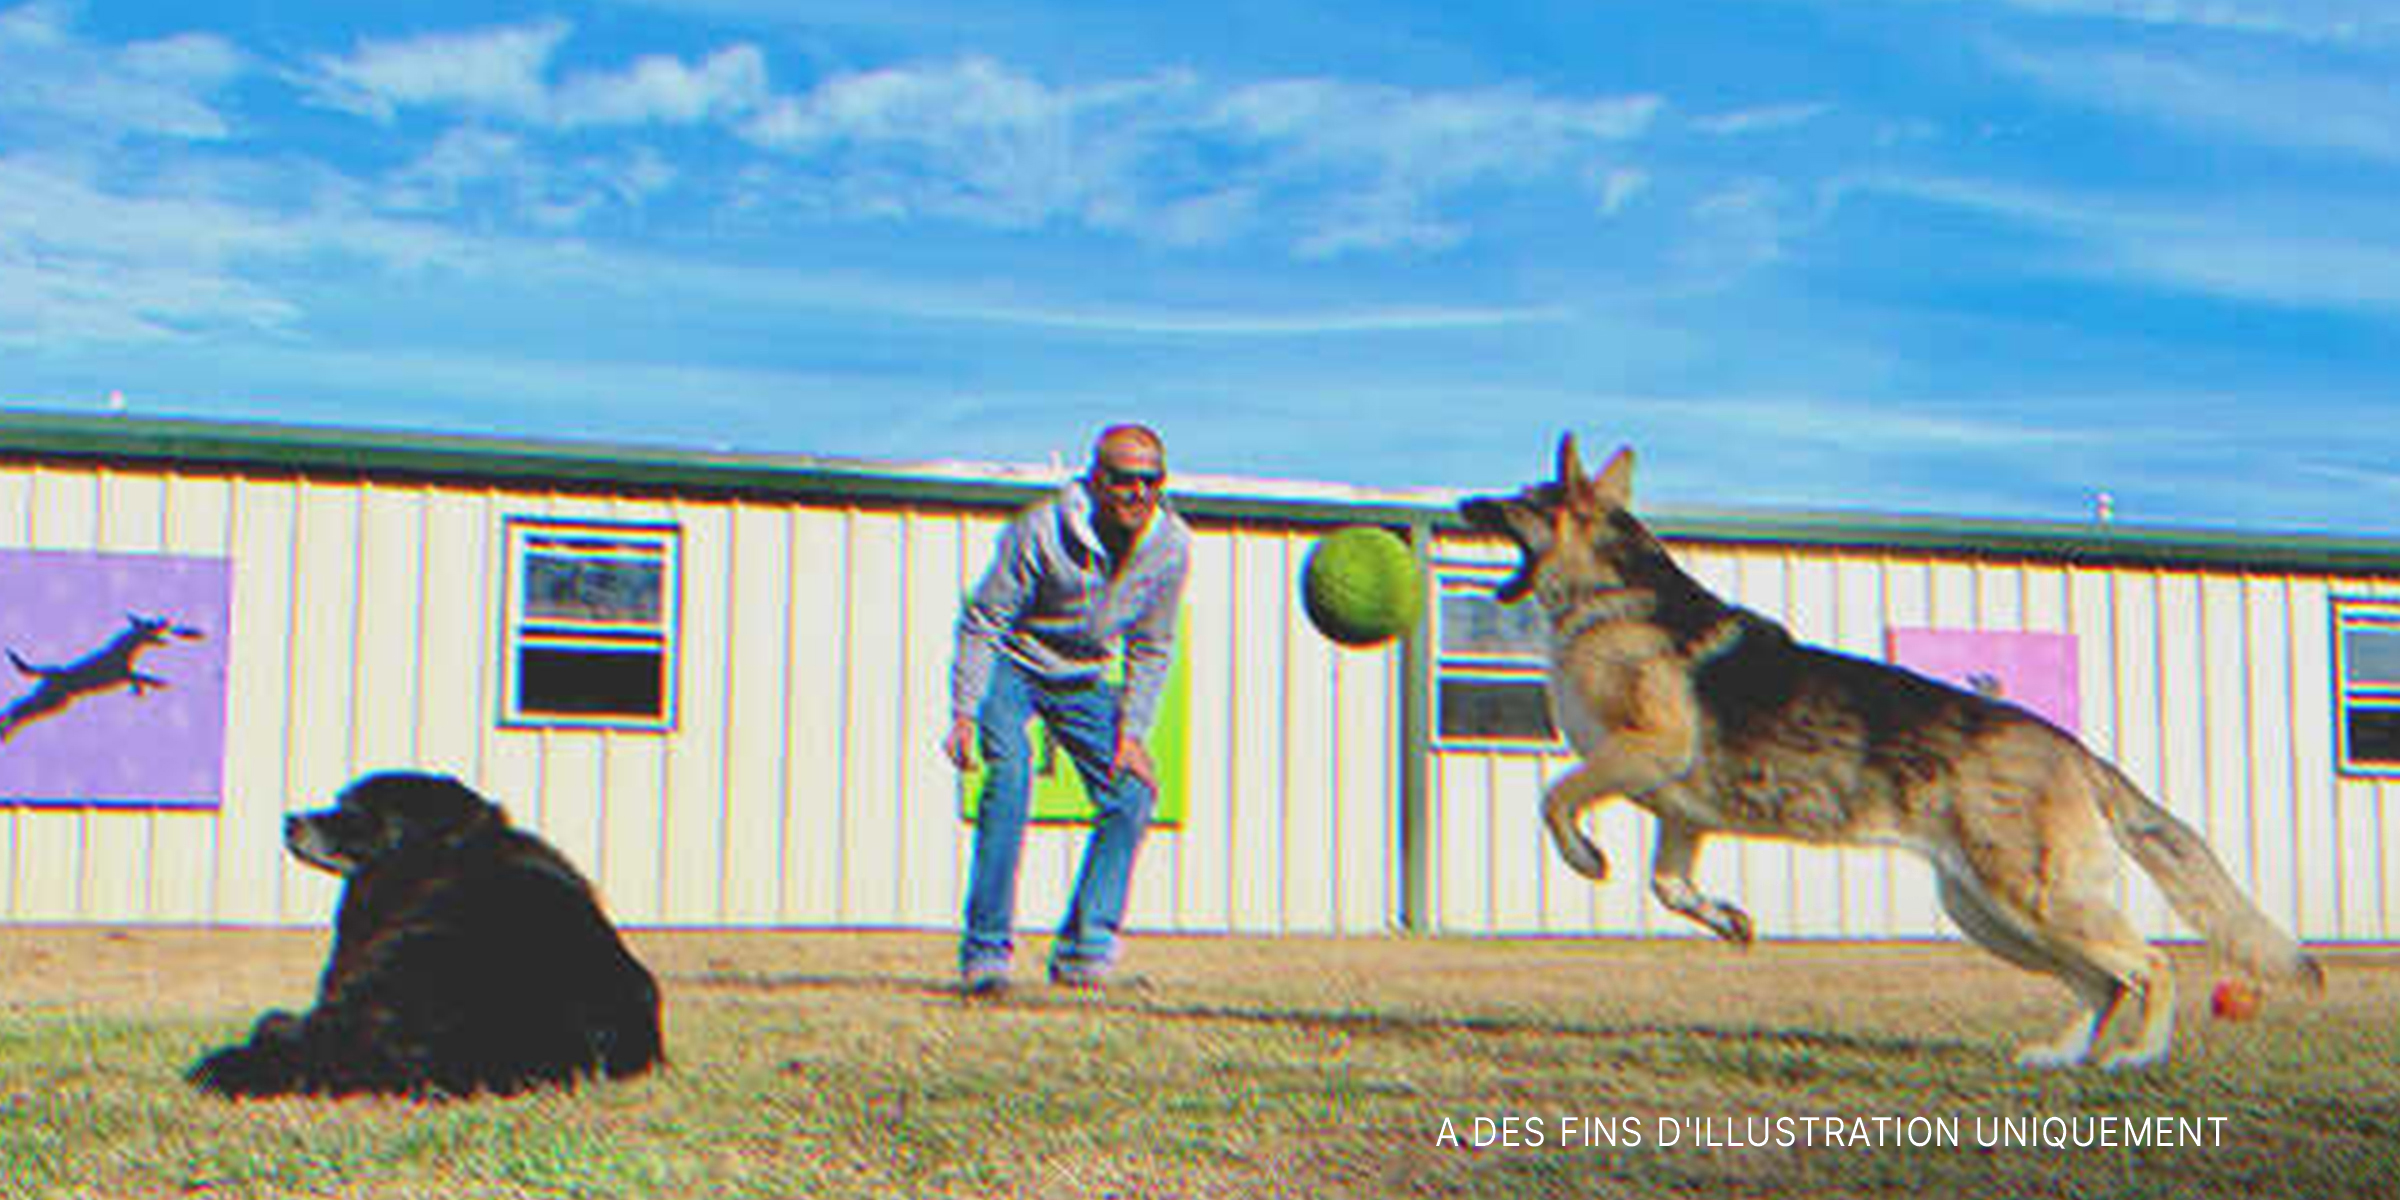 Un homme jouant avec des chiens | Source : Shutterstock